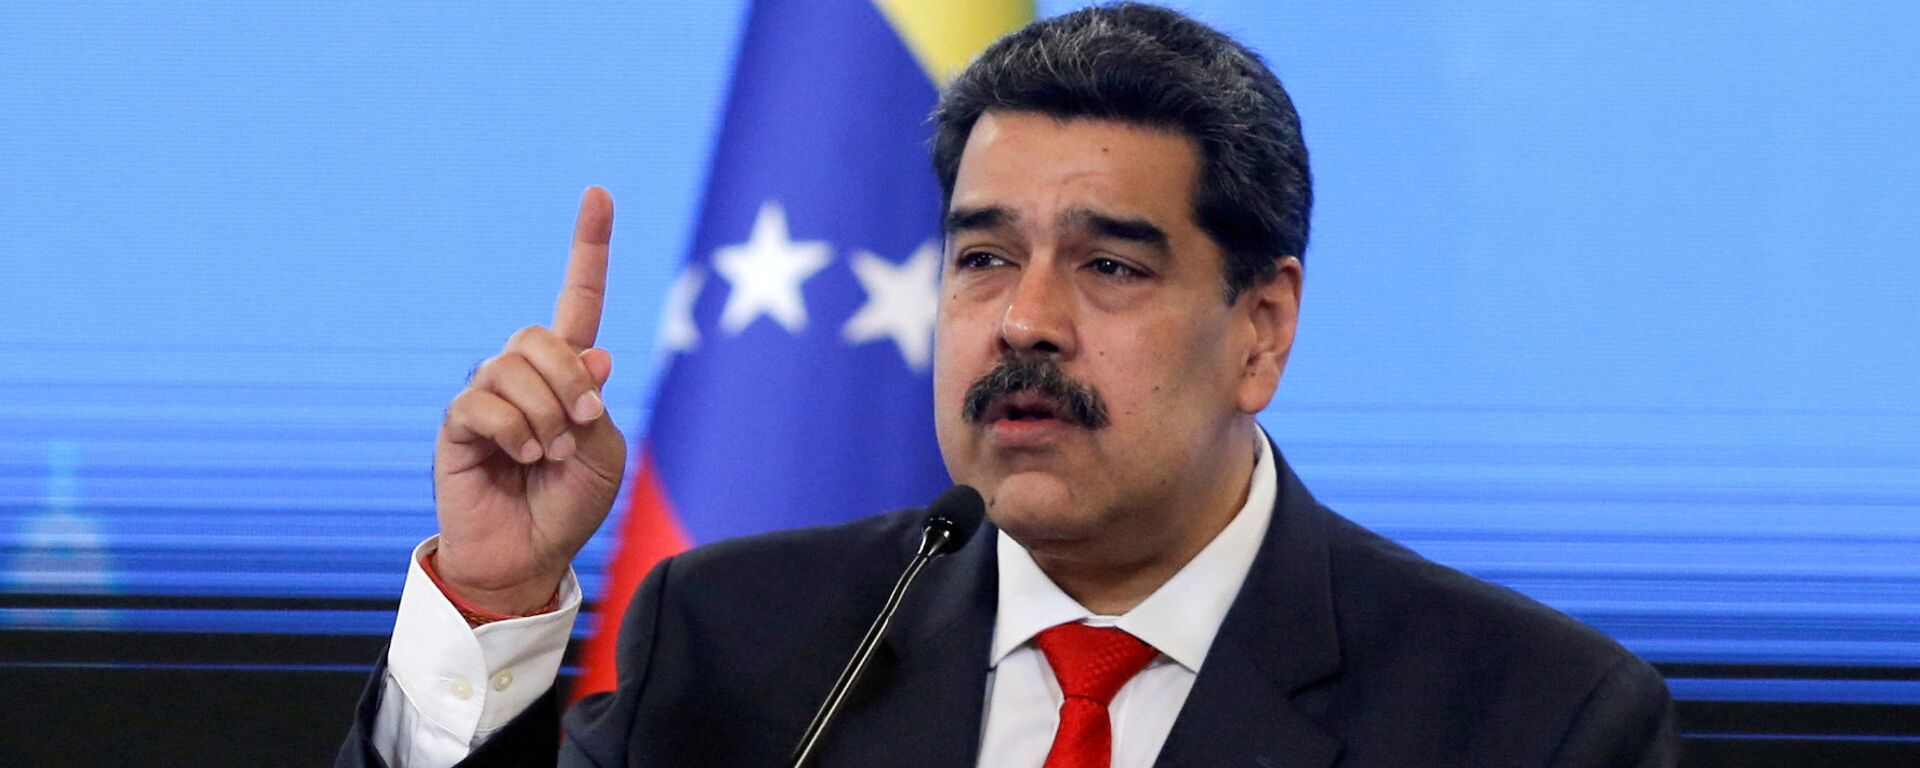 Nicolás Maduro, presidente de Venezuela - Sputnik Mundo, 1920, 06.04.2021